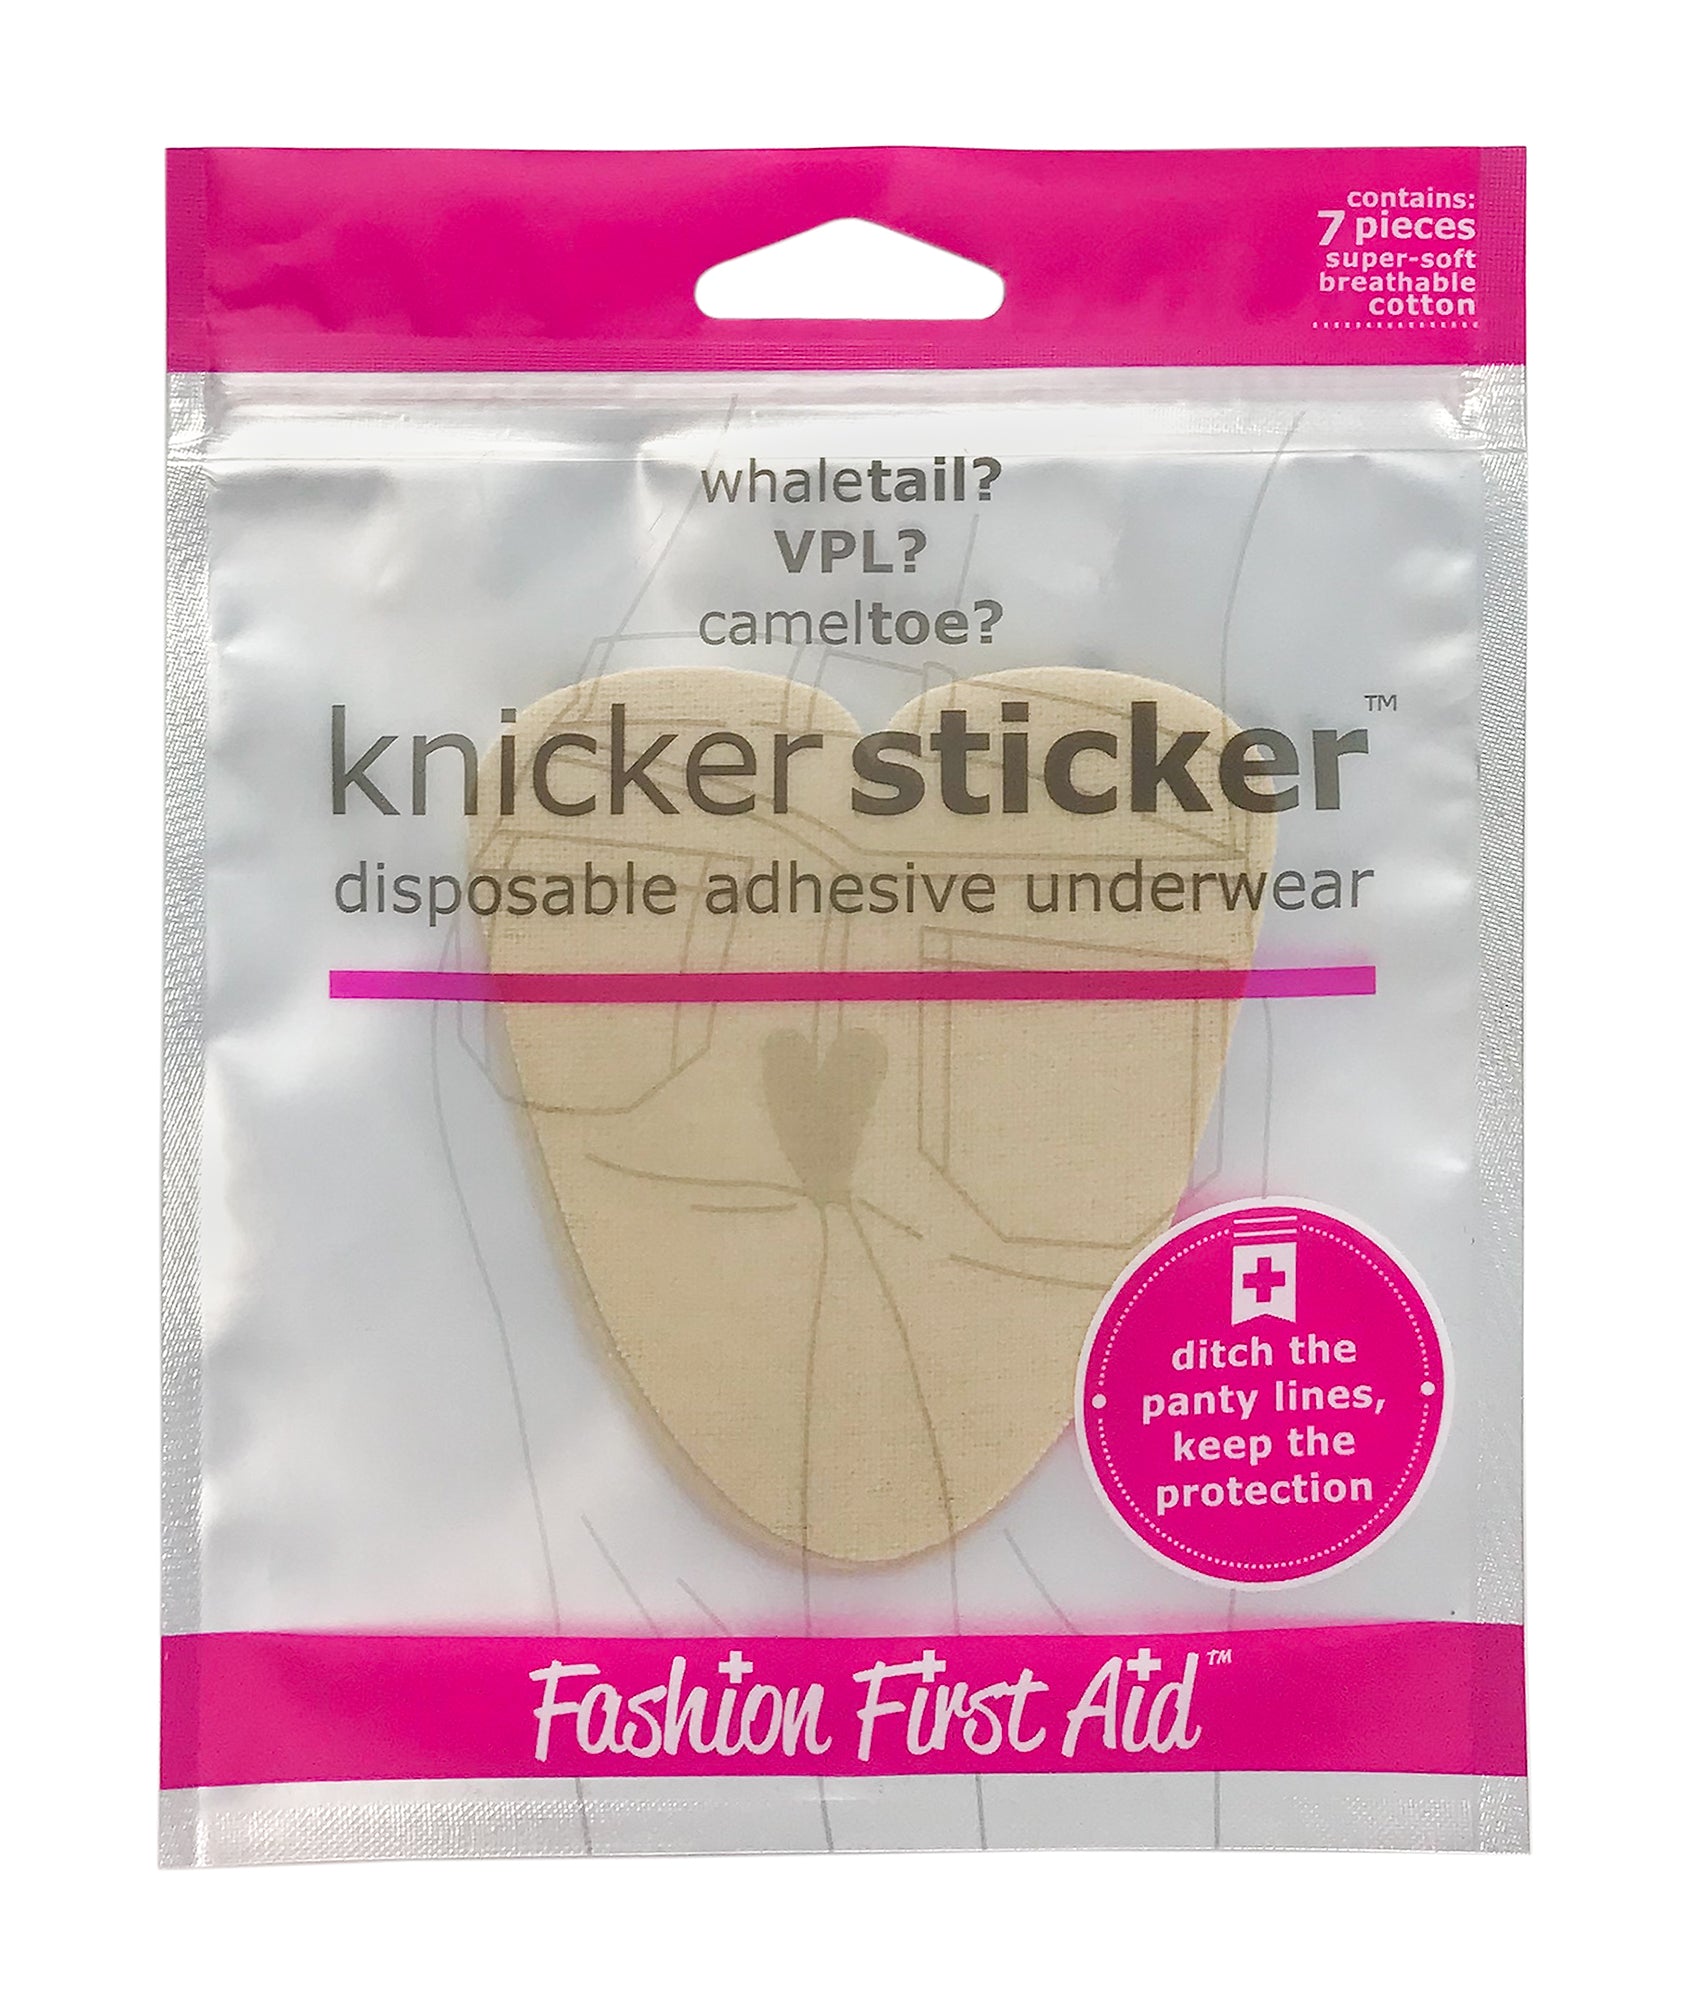 Knicker Sticker: disposable adhesive underwear